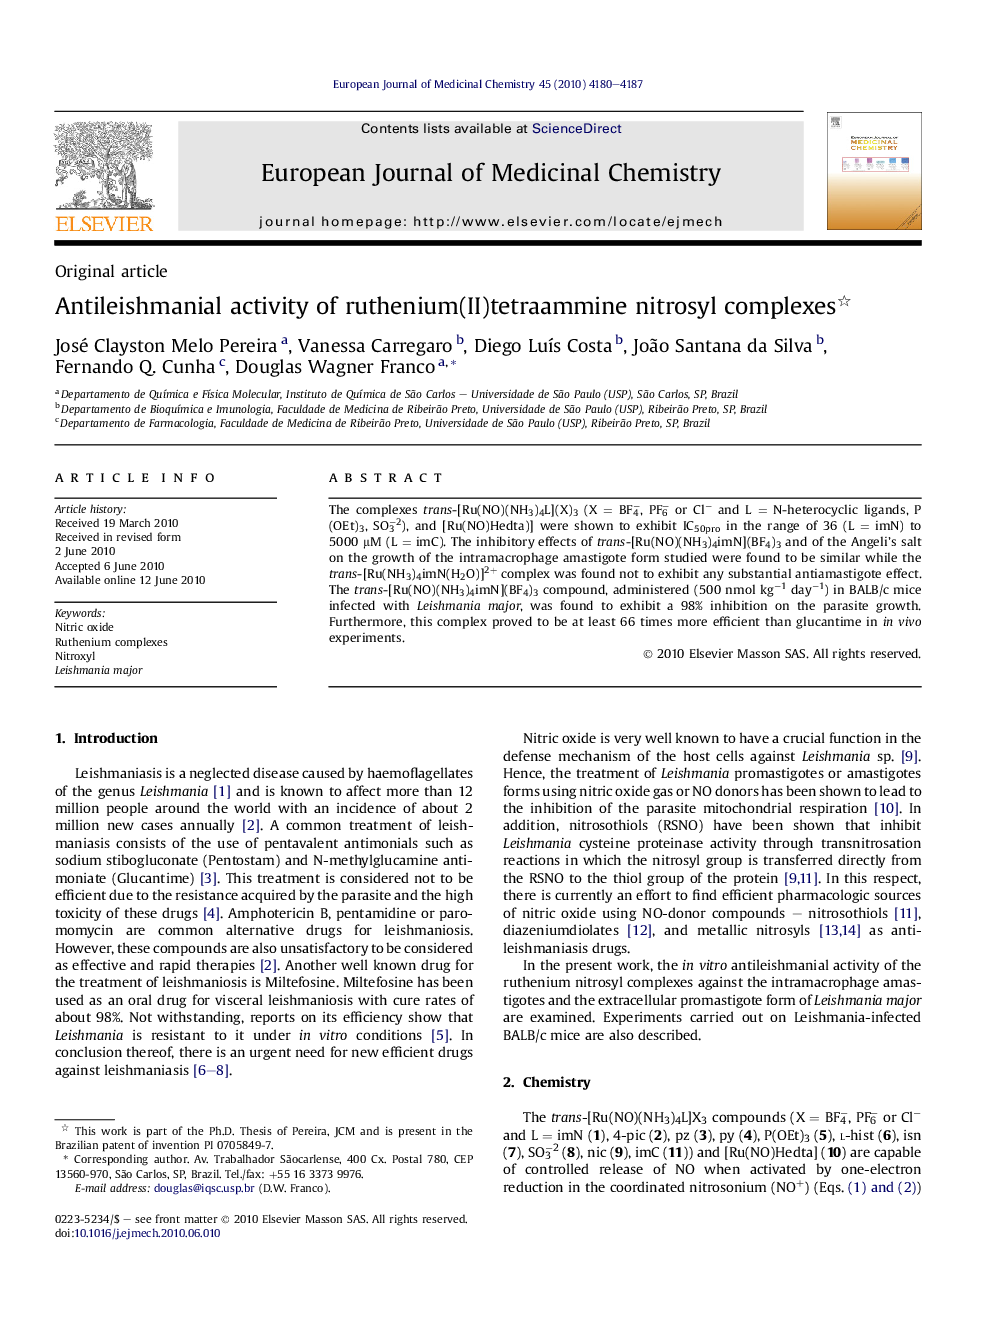 Antileishmanial activity of ruthenium(II)tetraammine nitrosyl complexes 